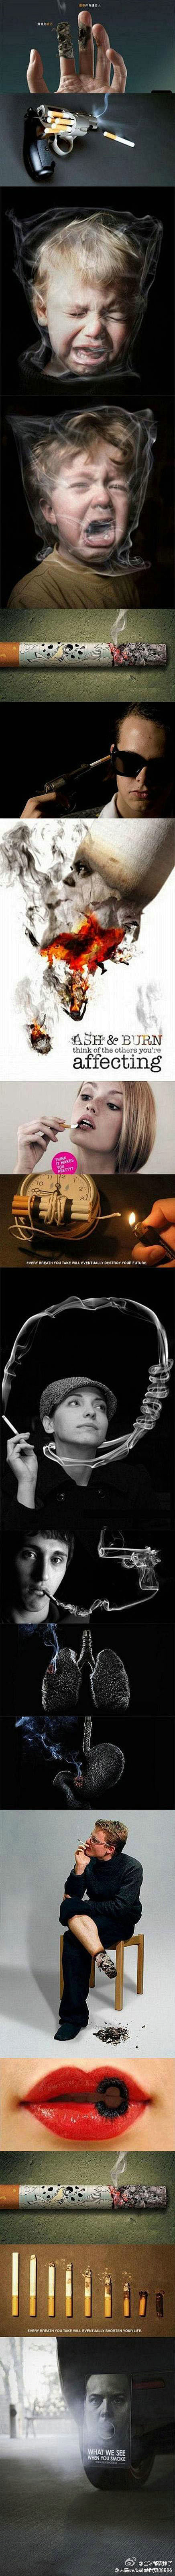 震撼人心的创意戒烟广告